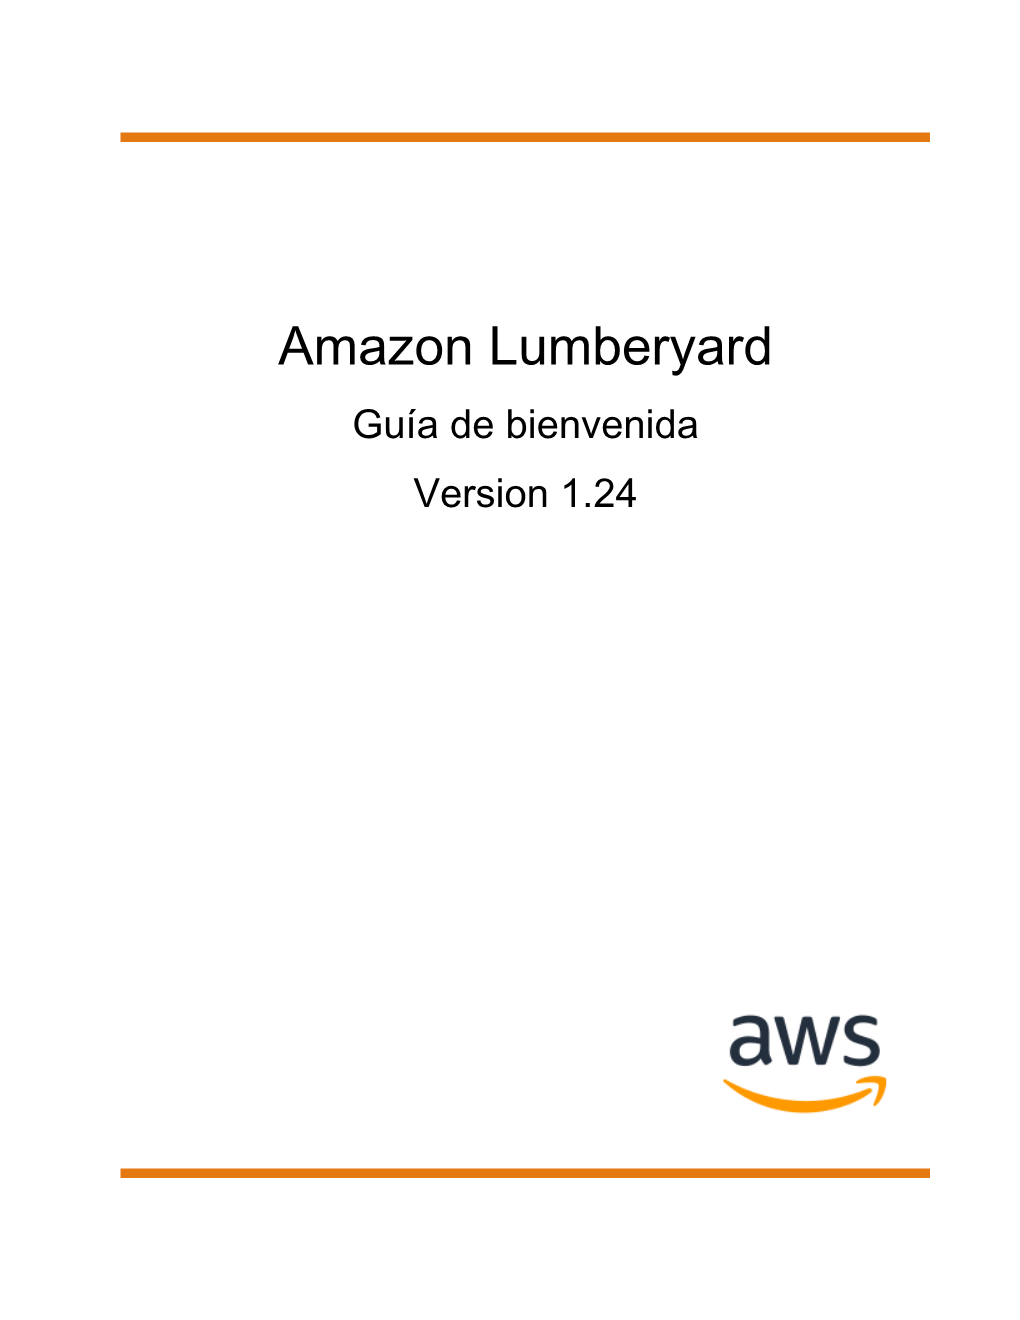 Amazon Lumberyard Guía De Bienvenida Version 1.24 Amazon Lumberyard Guía De Bienvenida